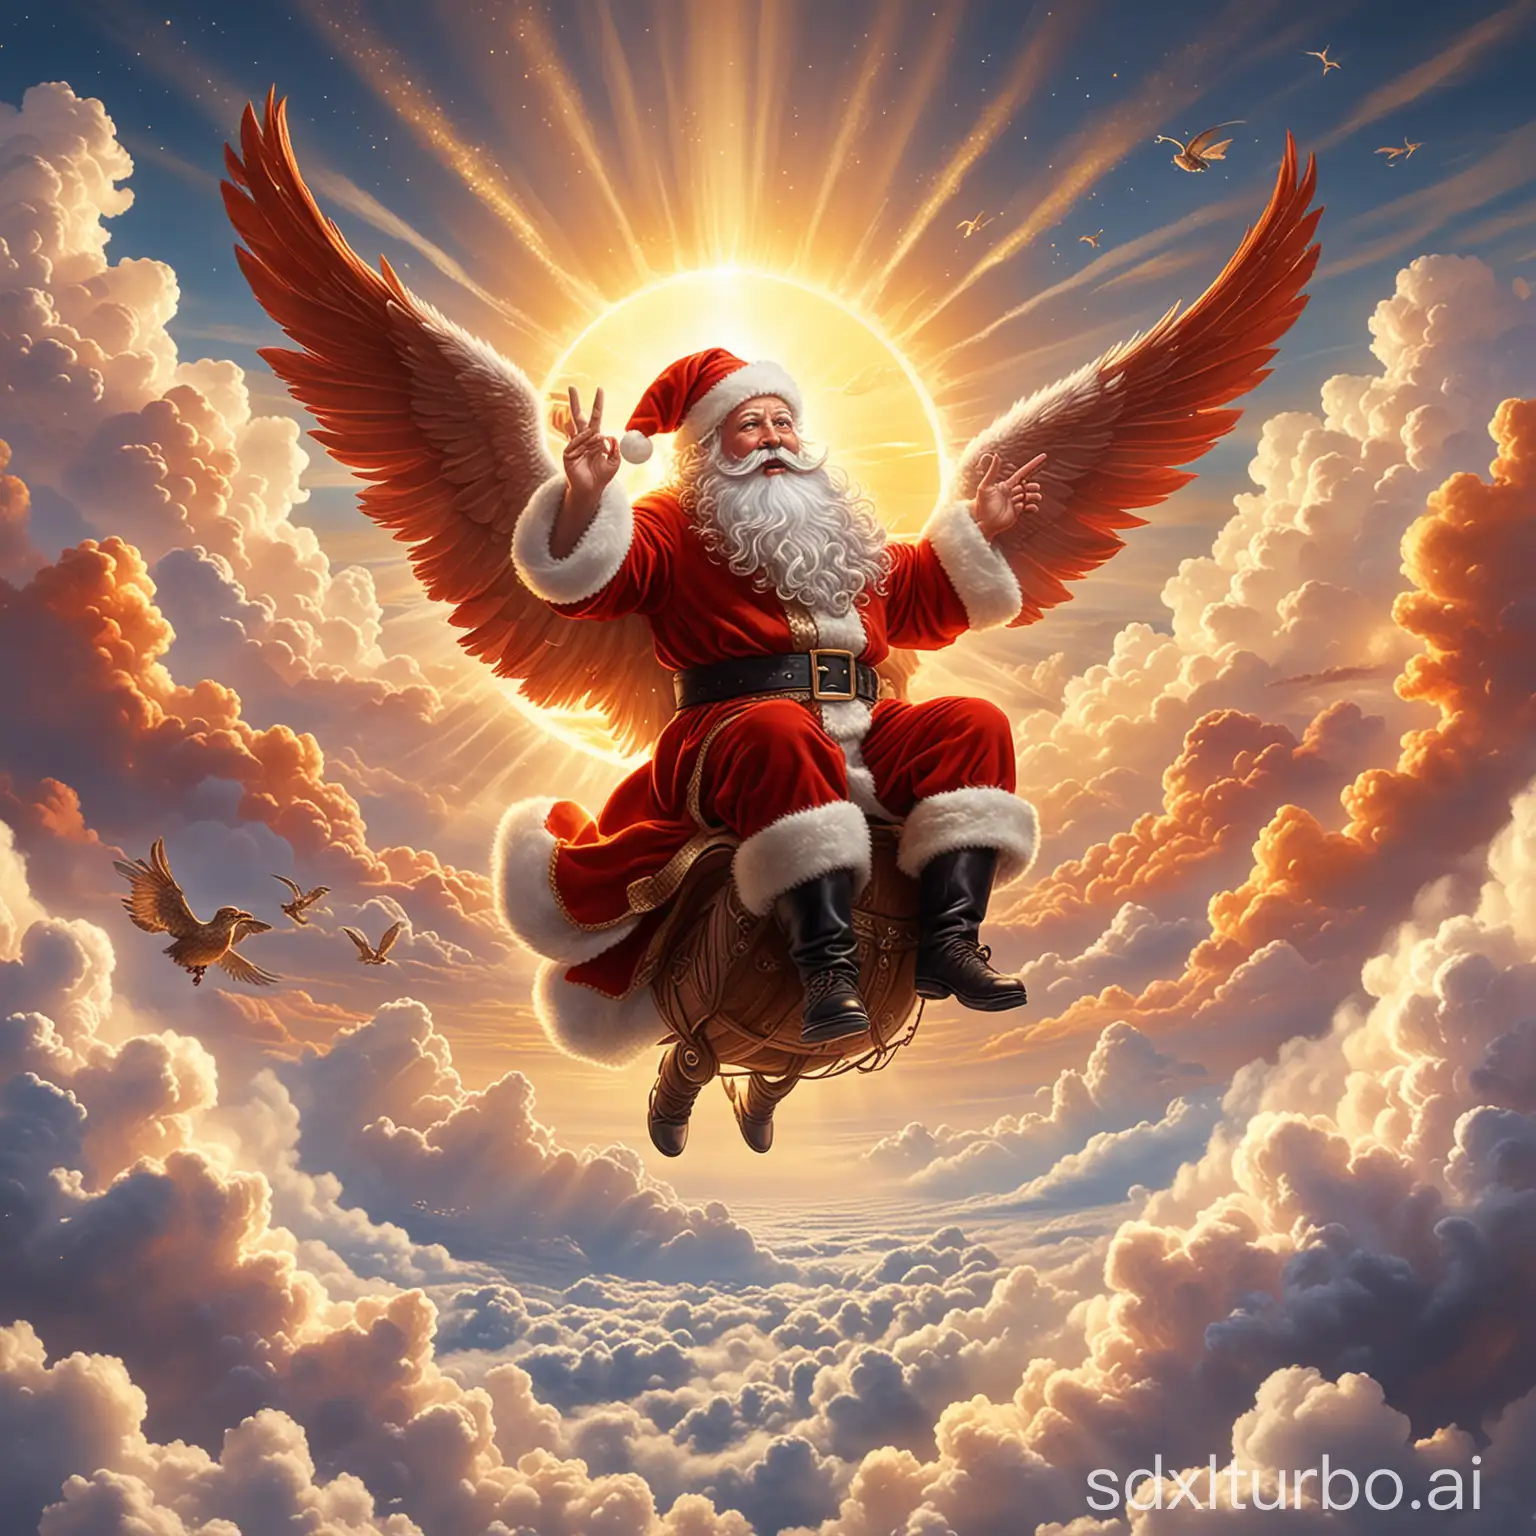 Eine Szene, in der der Weihnachtsmann auf einem glitzernden Sonnenphönix reitet, der ihn hoch über die Wolken trägt, während die Sonne über ihnen aufgeht und die Welt mit ihrem warmen Licht erfüllt.